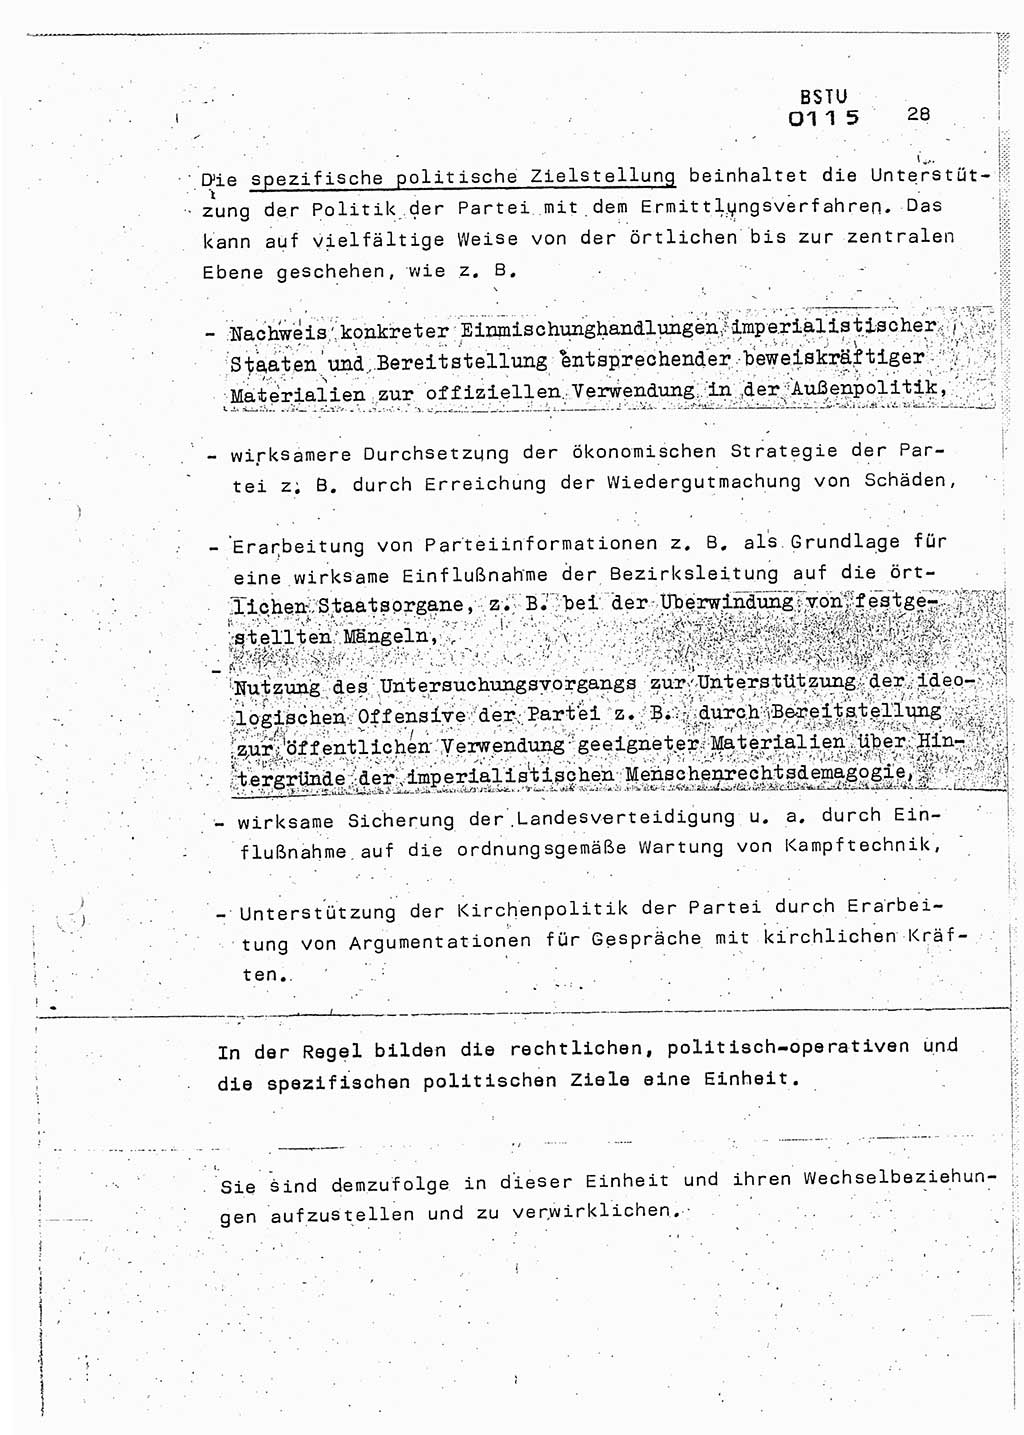 Lektion Ministerium für Staatssicherheit (MfS) [Deutsche Demokratische Republik (DDR)], Hauptabteilung (HA) Ⅸ, Berlin 1987, Seite 28 (Lekt. Pln. Bearb. EV MfS DDR HA Ⅸ /87 1987, S. 28)